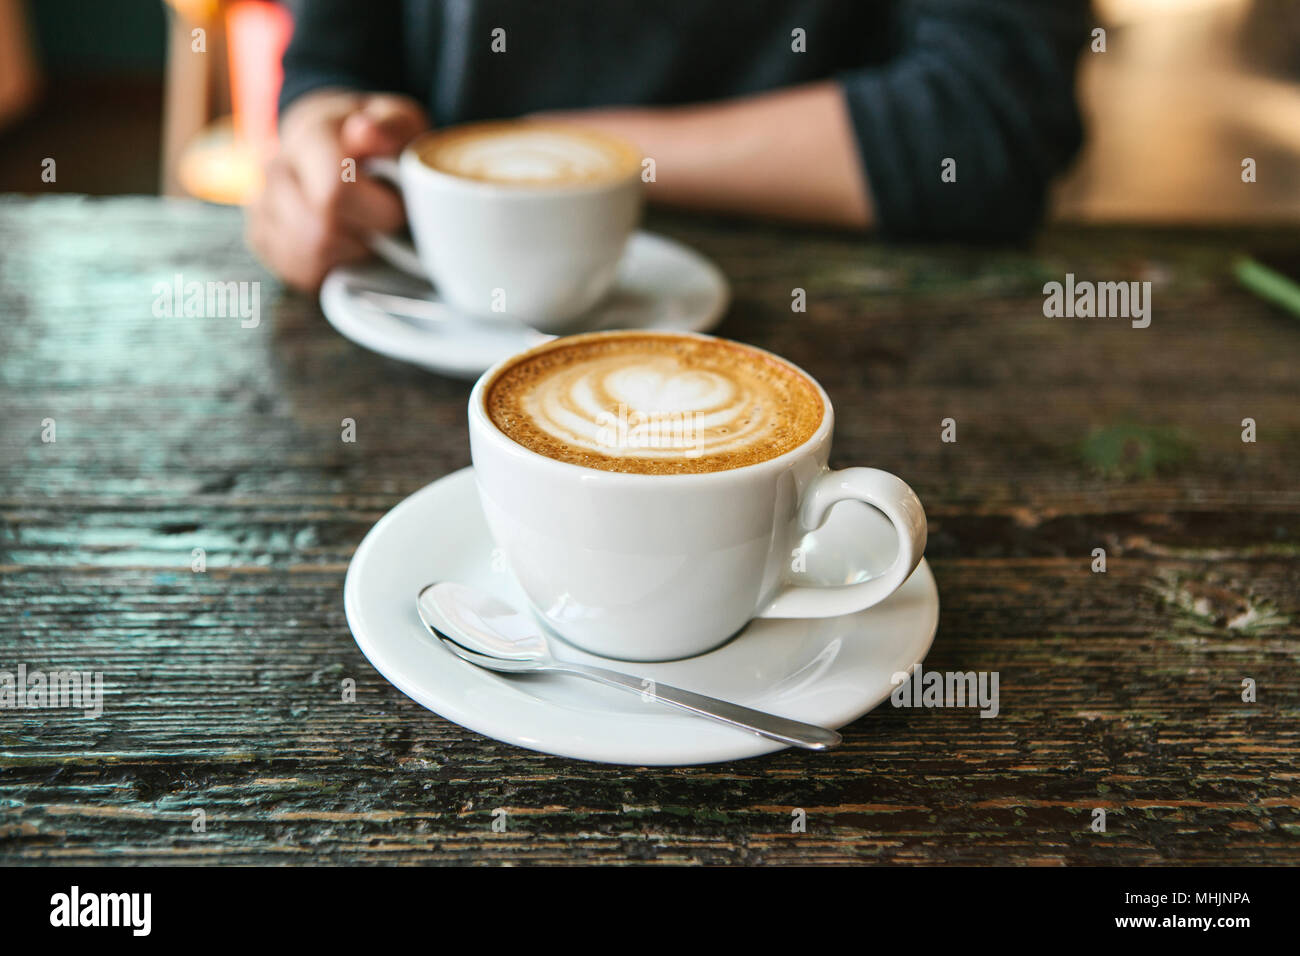 Zwei Tassen Kaffee Auf Einem Holztisch Die Madchen In Ihrer Hand Eine Tasse Kaffee Im Hintergrund Halt Ein Foto Zeigt Ein Treffen Von Menschen Und Einem Gemeinsamen Zeitvertreib Stockfotografie Alamy